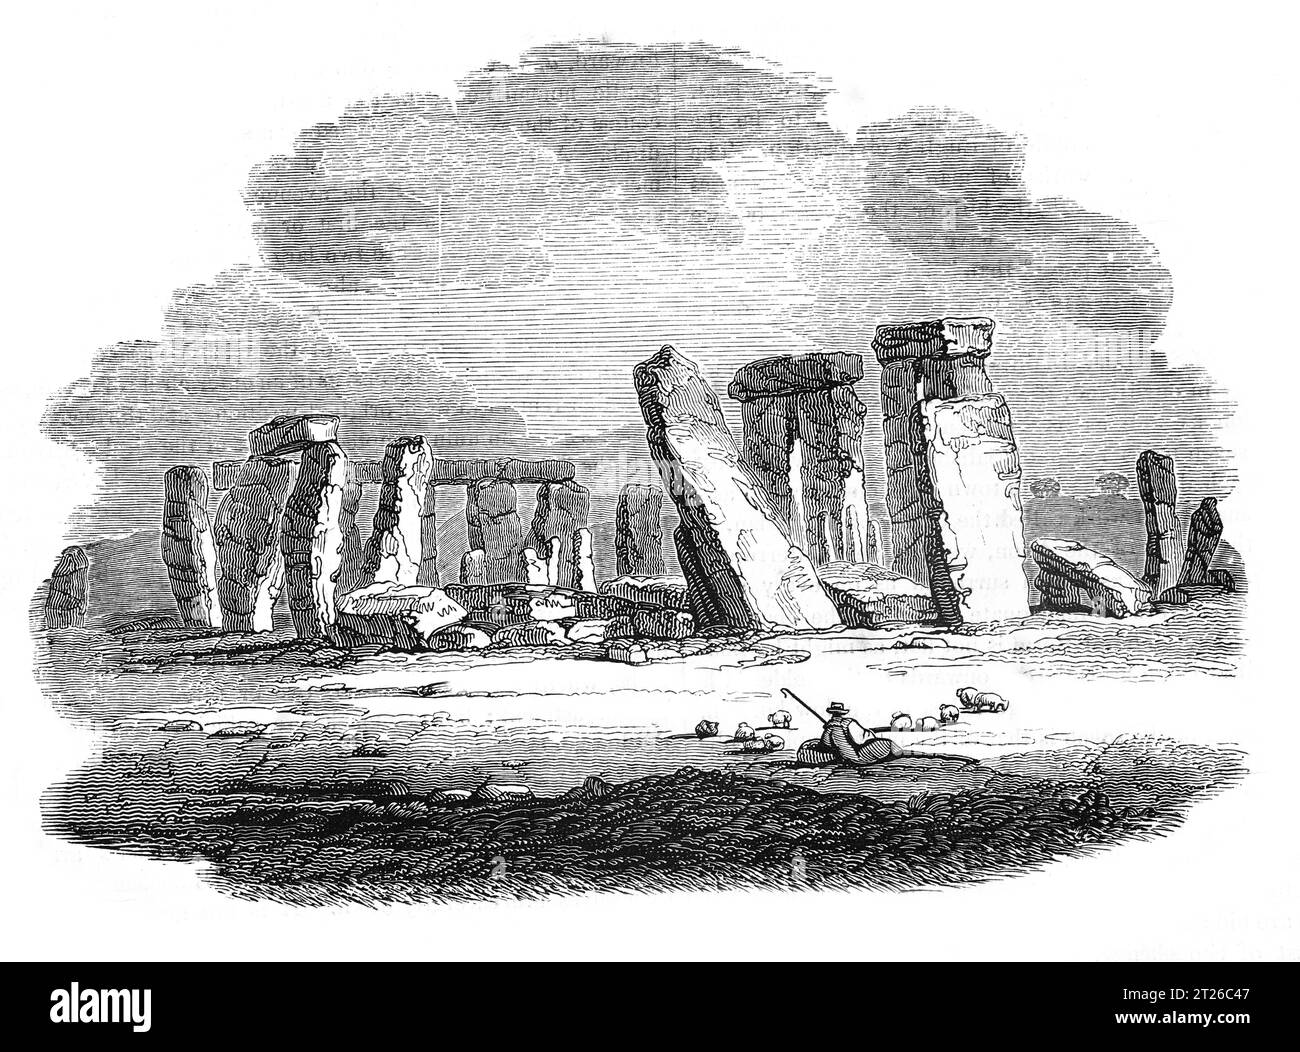 Stonehenge antes de la restauración alrededor de 1860. Ilustración en blanco y negro de la 'Vieja Inglaterra' publicada por James Sangster en 1860. Foto de stock